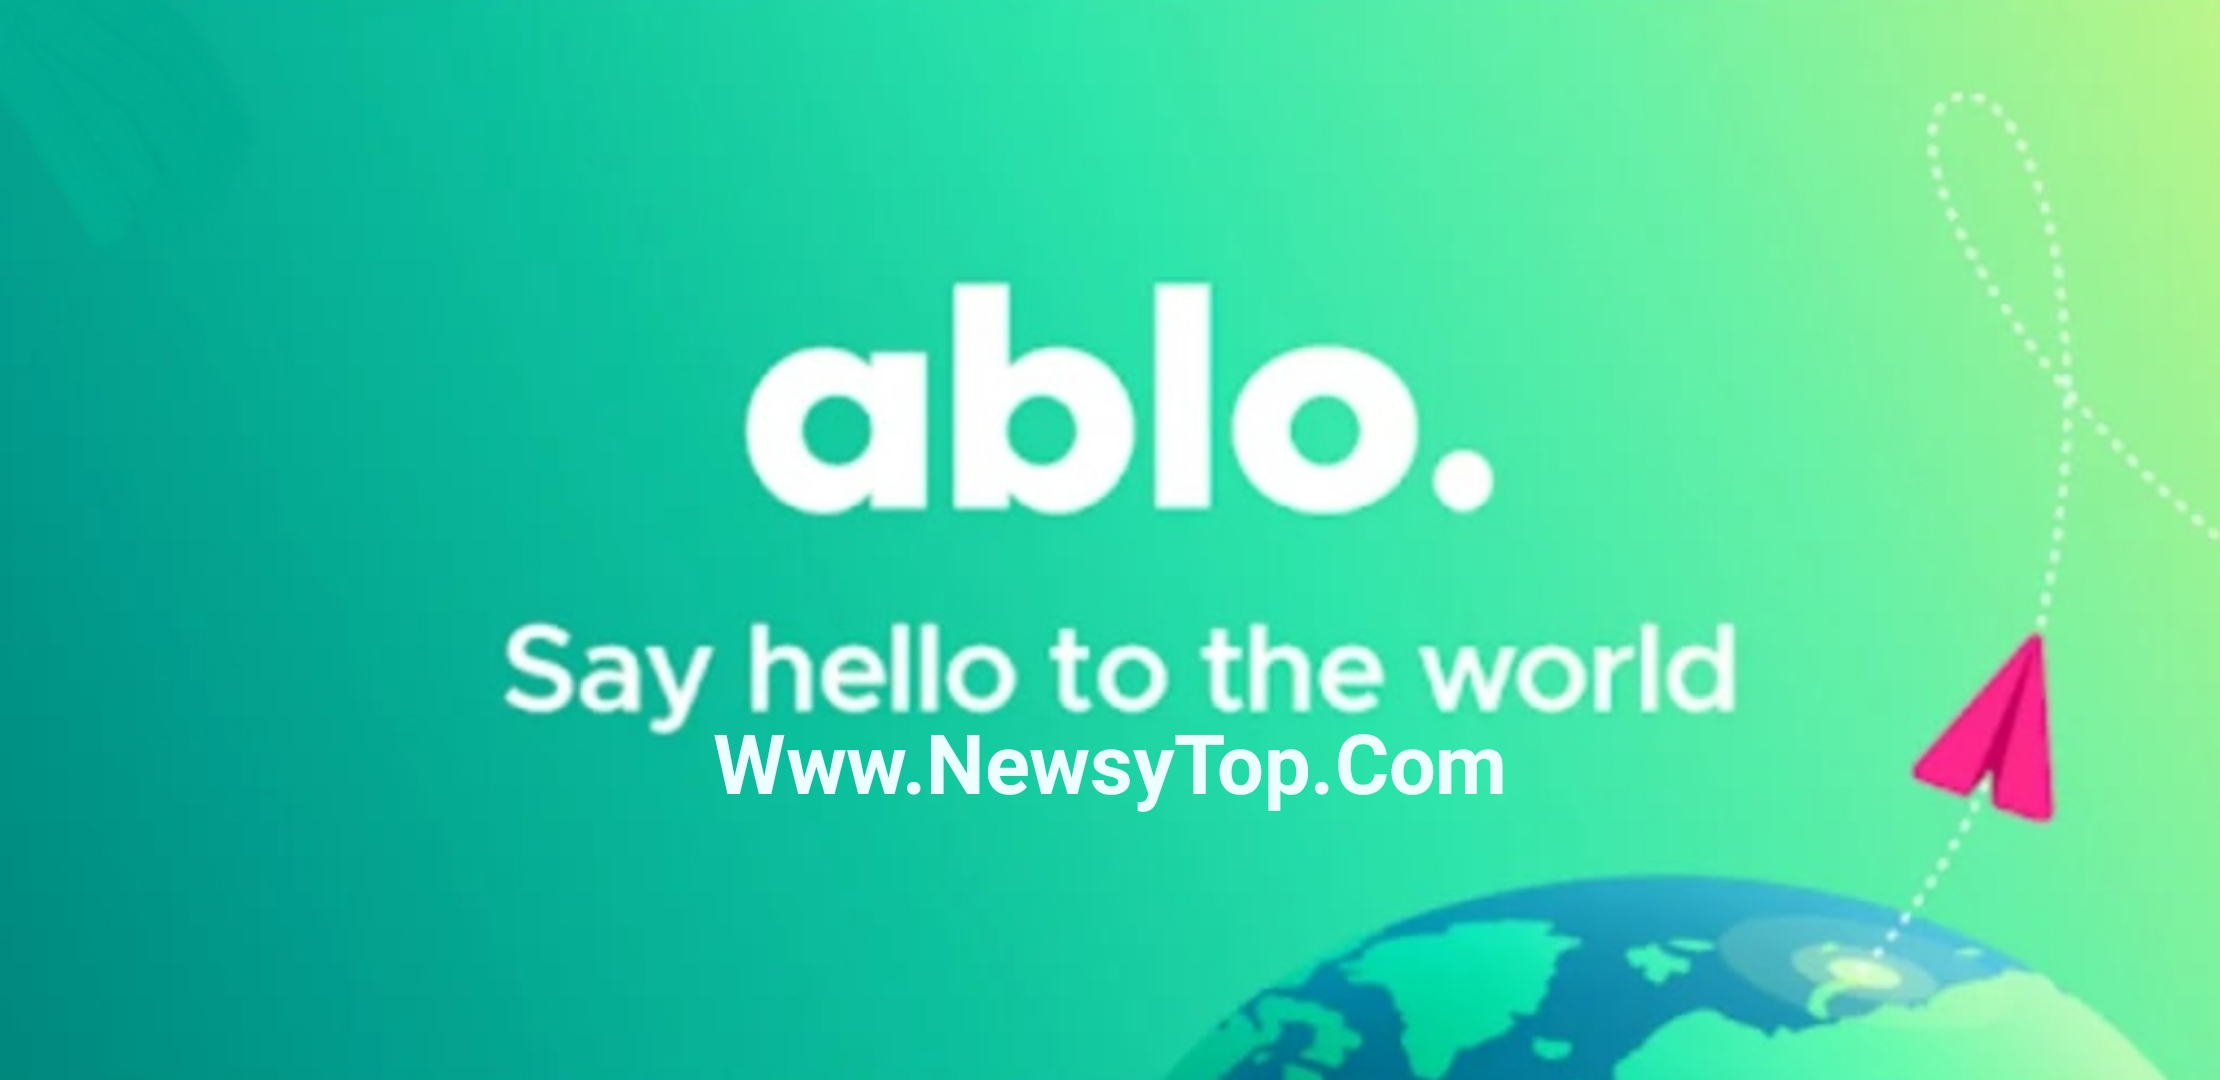 تحميل برنامج أبلو Ablo مهكر 2021 مجانا لـ أندرويد